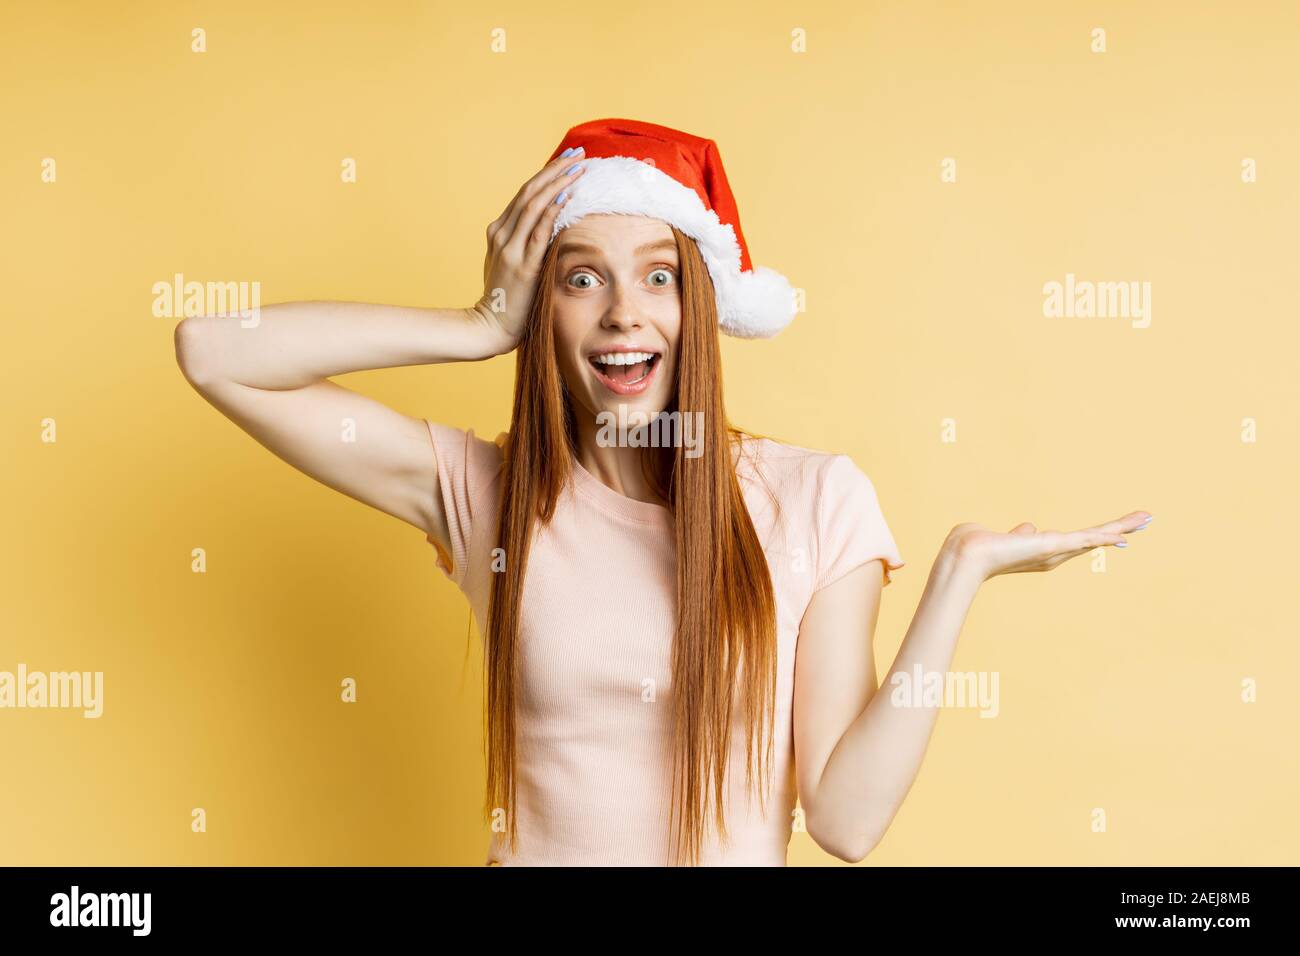 Stupéfait caucasian ginger girl in Santa hat et crème couleur t shirt, holding copy space, posant avec open palm, de montrer ou de présenter votre produit, ite Banque D'Images